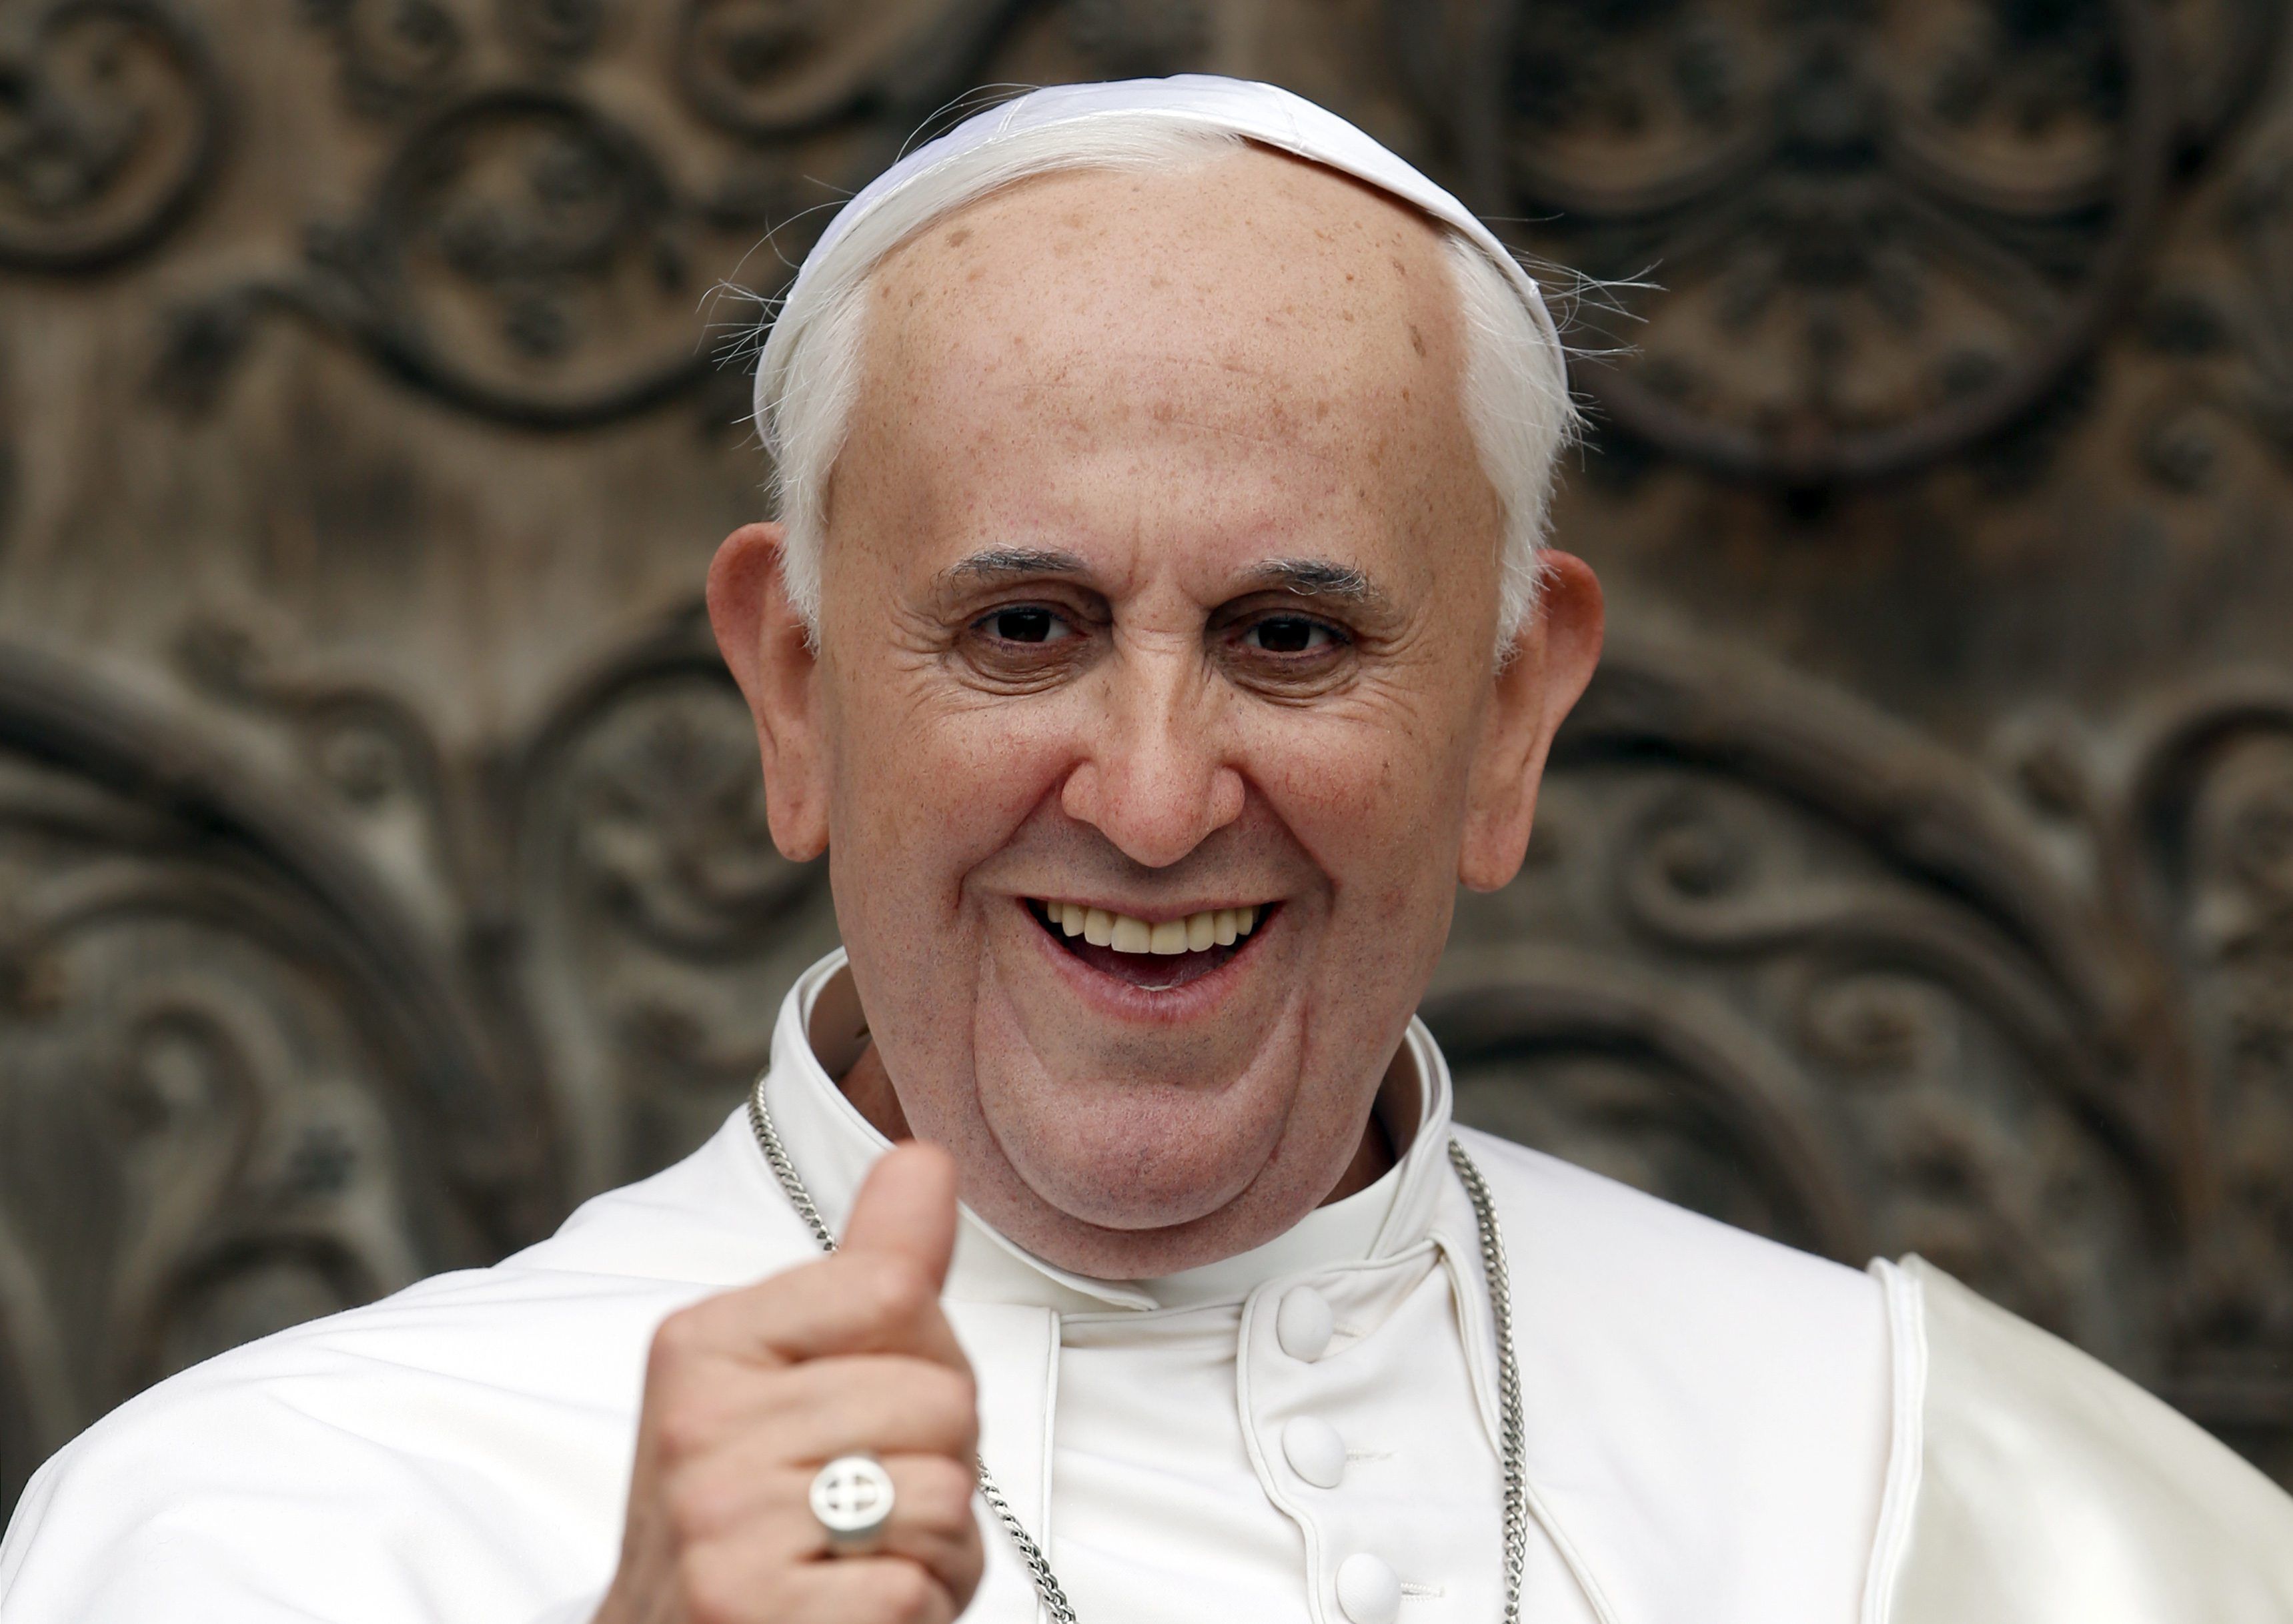 Папа Франциск 